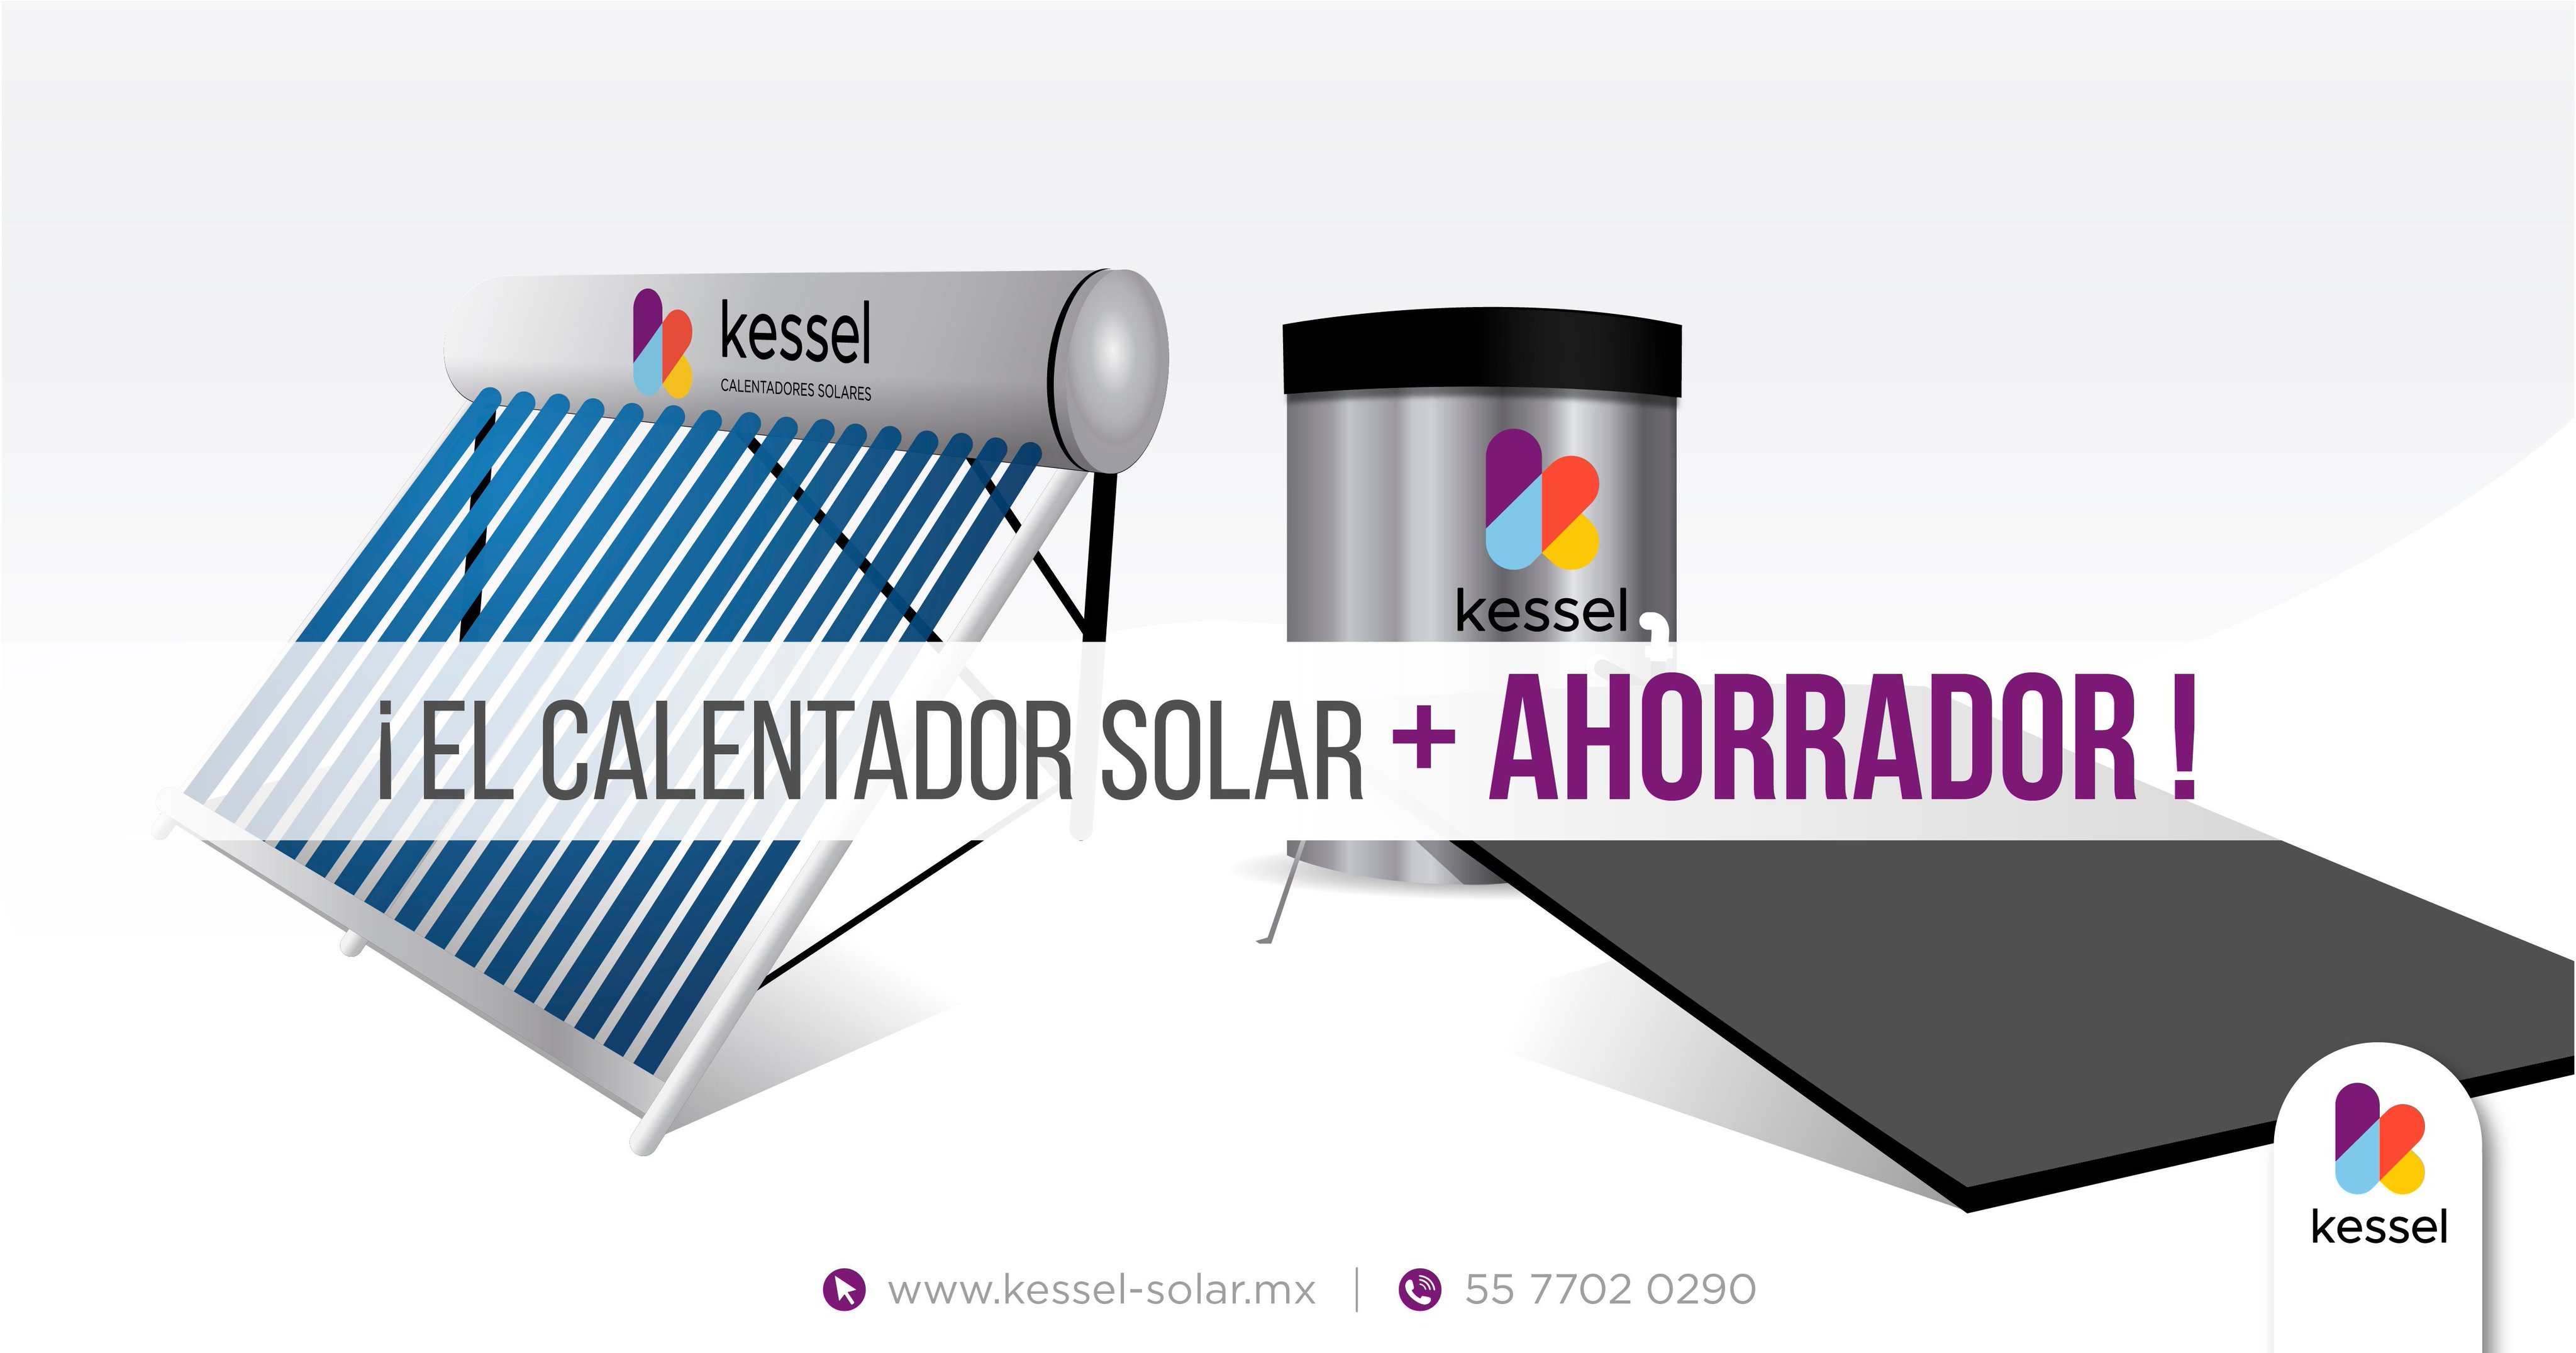 Intervenir Solitario milla nautica Kessel Calentadores Solares on Twitter: "¡Tenemos los Calentadores solares  más ahorradores y ecológicos del mercado mexicano: Calentadores solares  Kessel son tu mejor opción! Para más información: visítanos en  https://t.co/1bhhc7WytJ, llámanos al 55